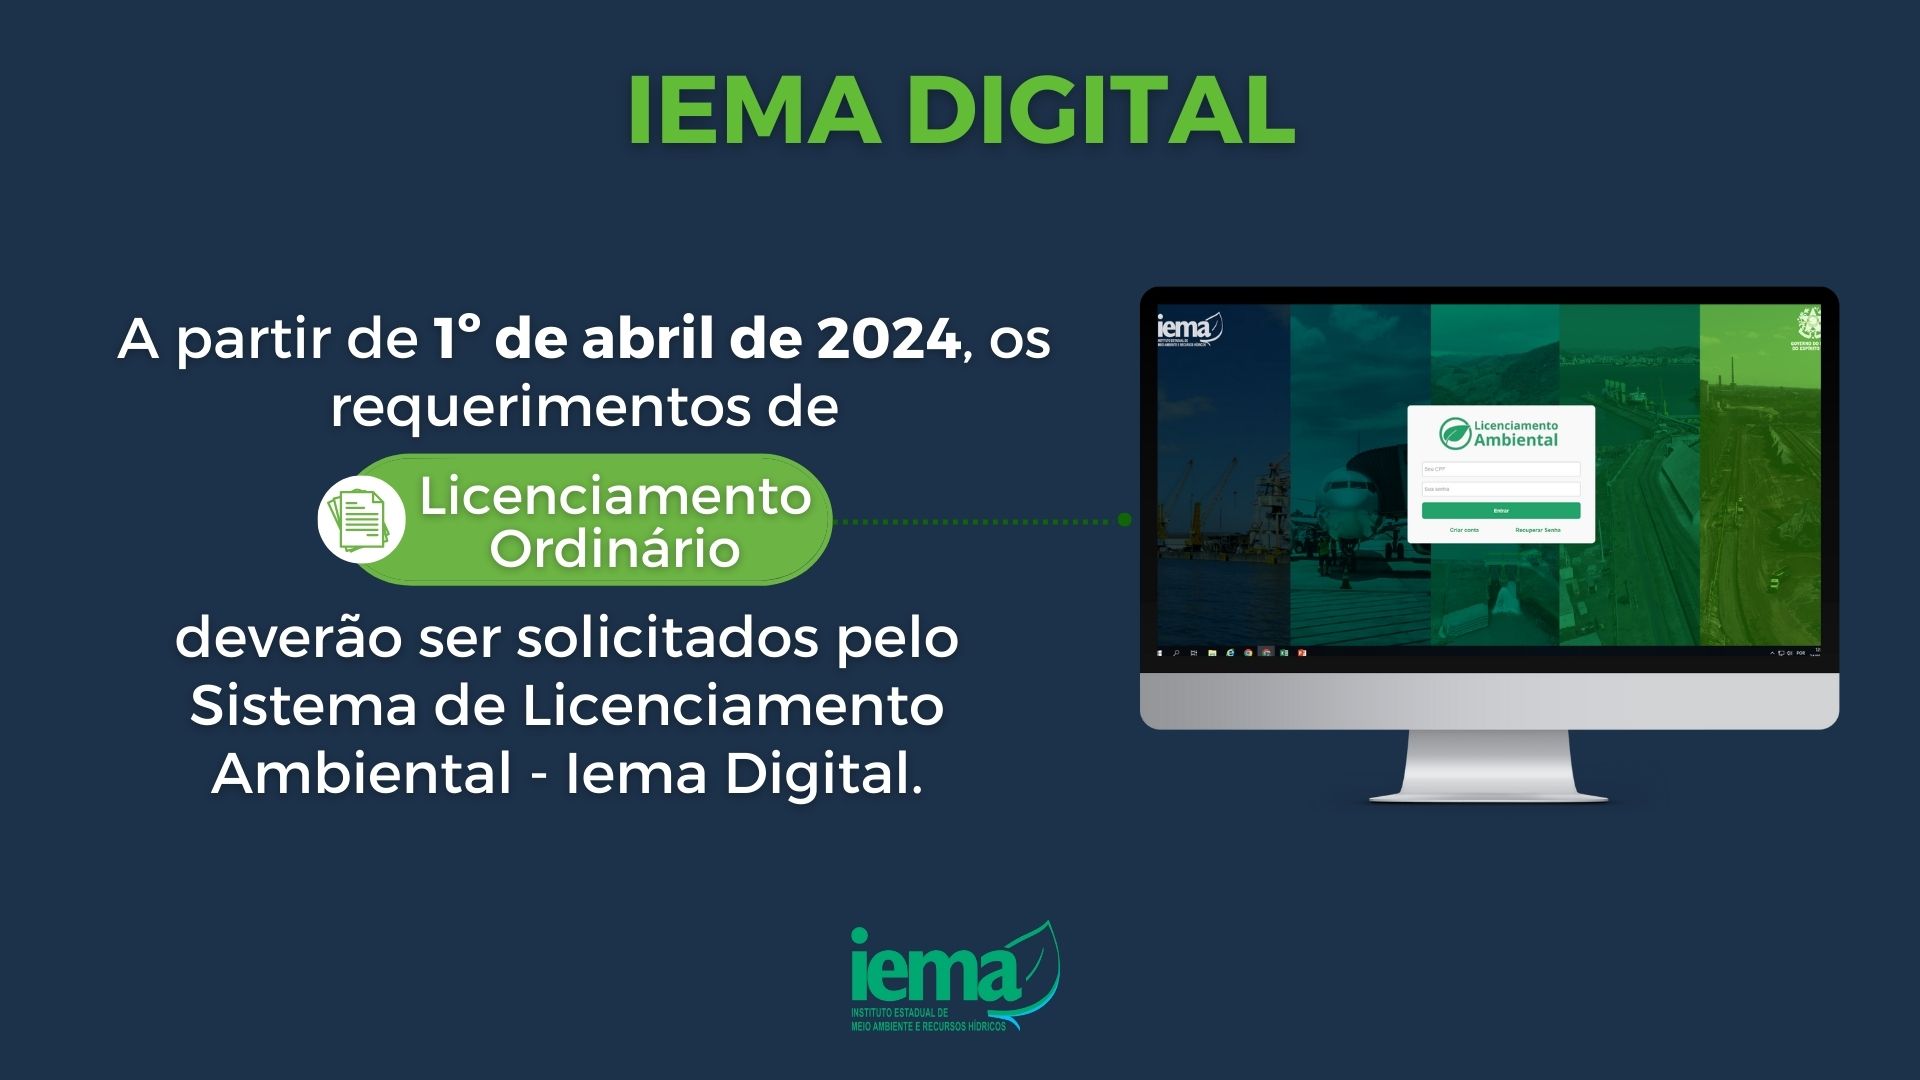 Iema Digital - Licenciamento Ordinãrio (1)